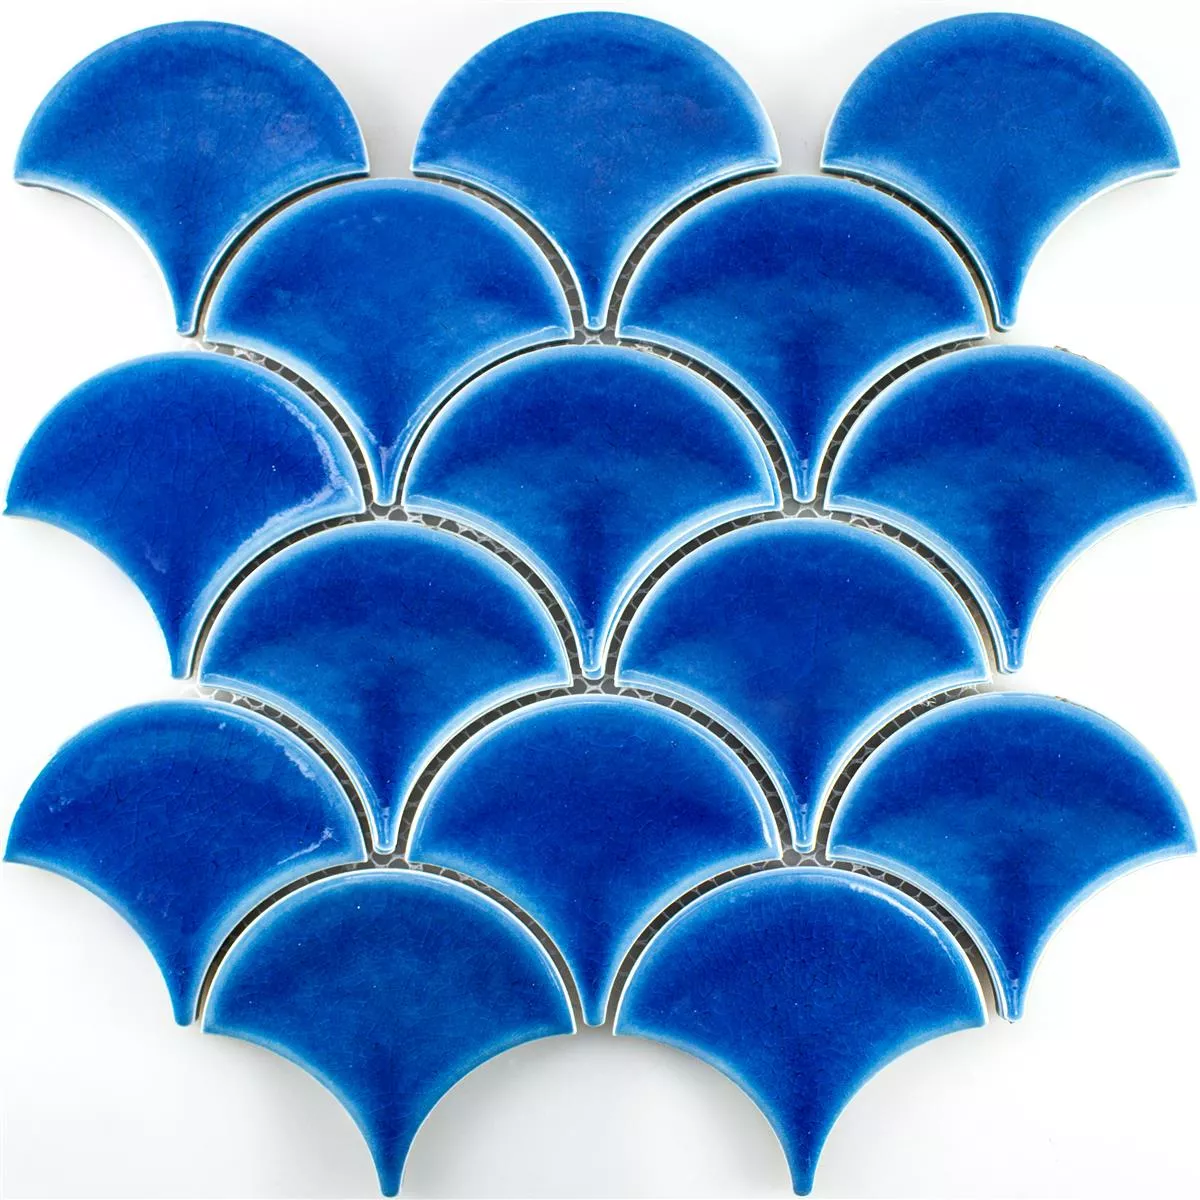 Campione Ceramica Mosaico Newark Blu